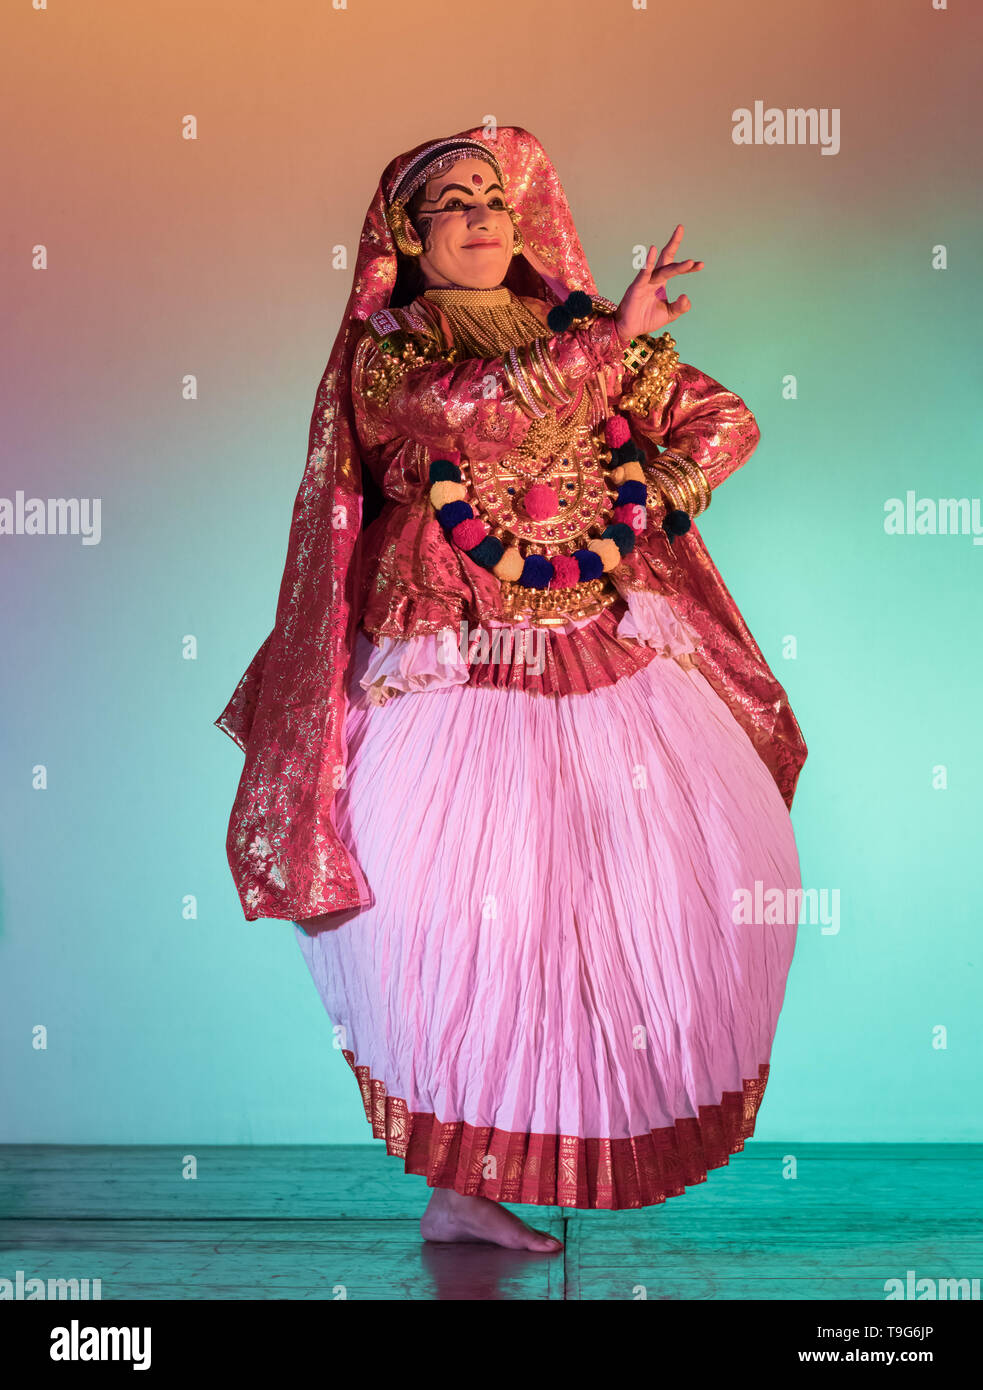 Danseur de Kathakali, danse classique du sud de l'Inde Banque D'Images